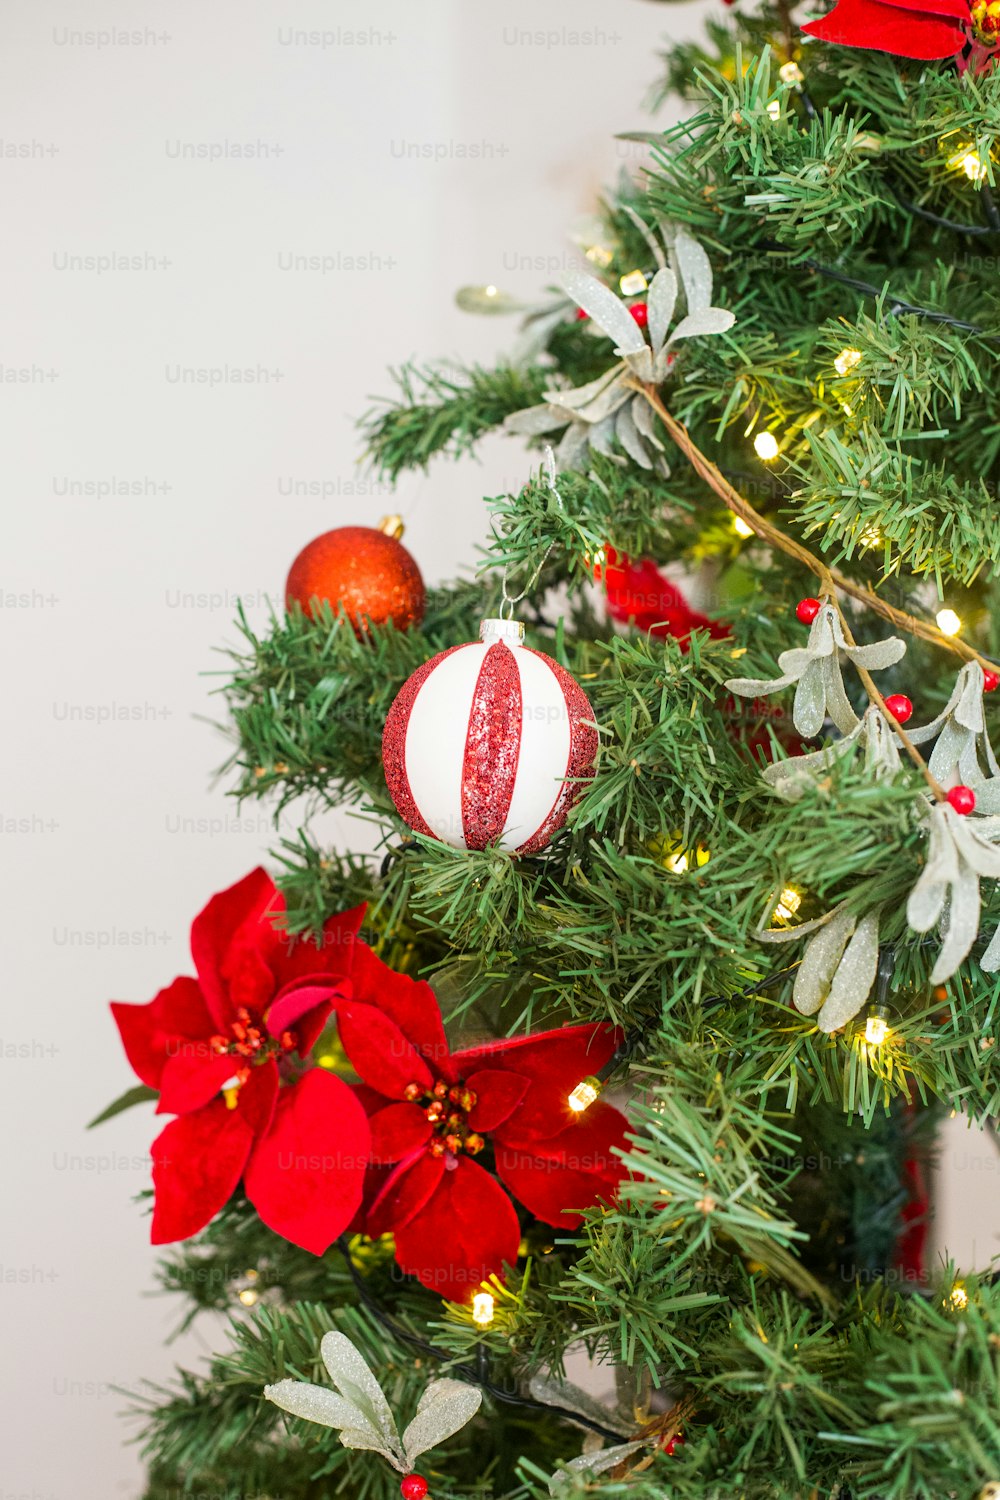 빨간색과 흰색 장식품으로 장식된 크리스마스 트리